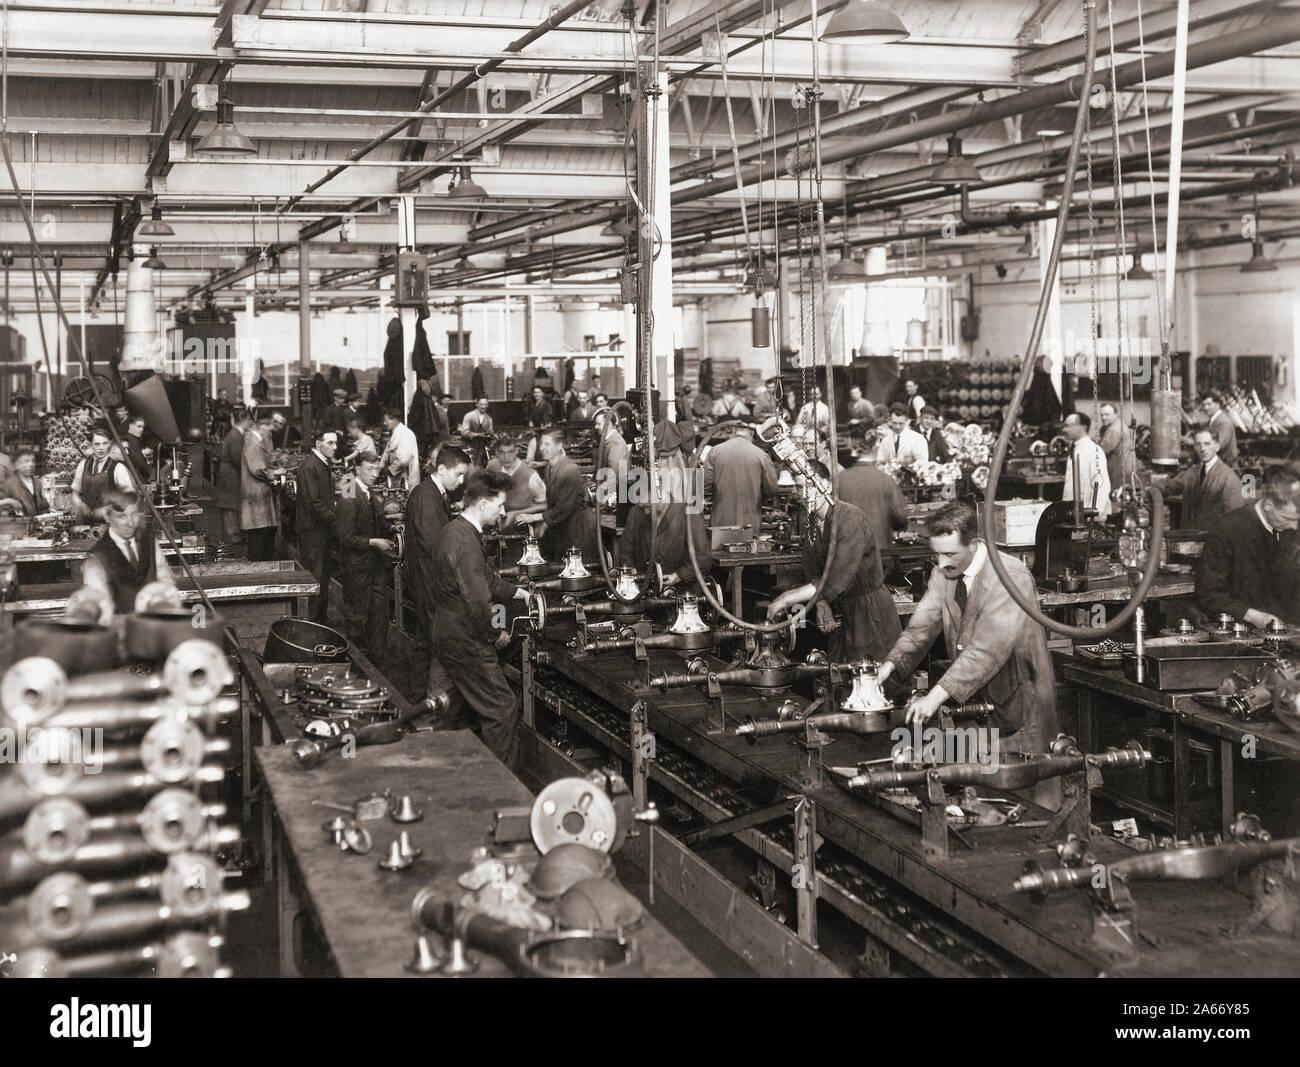 Wolseley Motors intérieur, à Birmingham dans les années 30. Les travailleurs sur une ligne de production. Banque D'Images